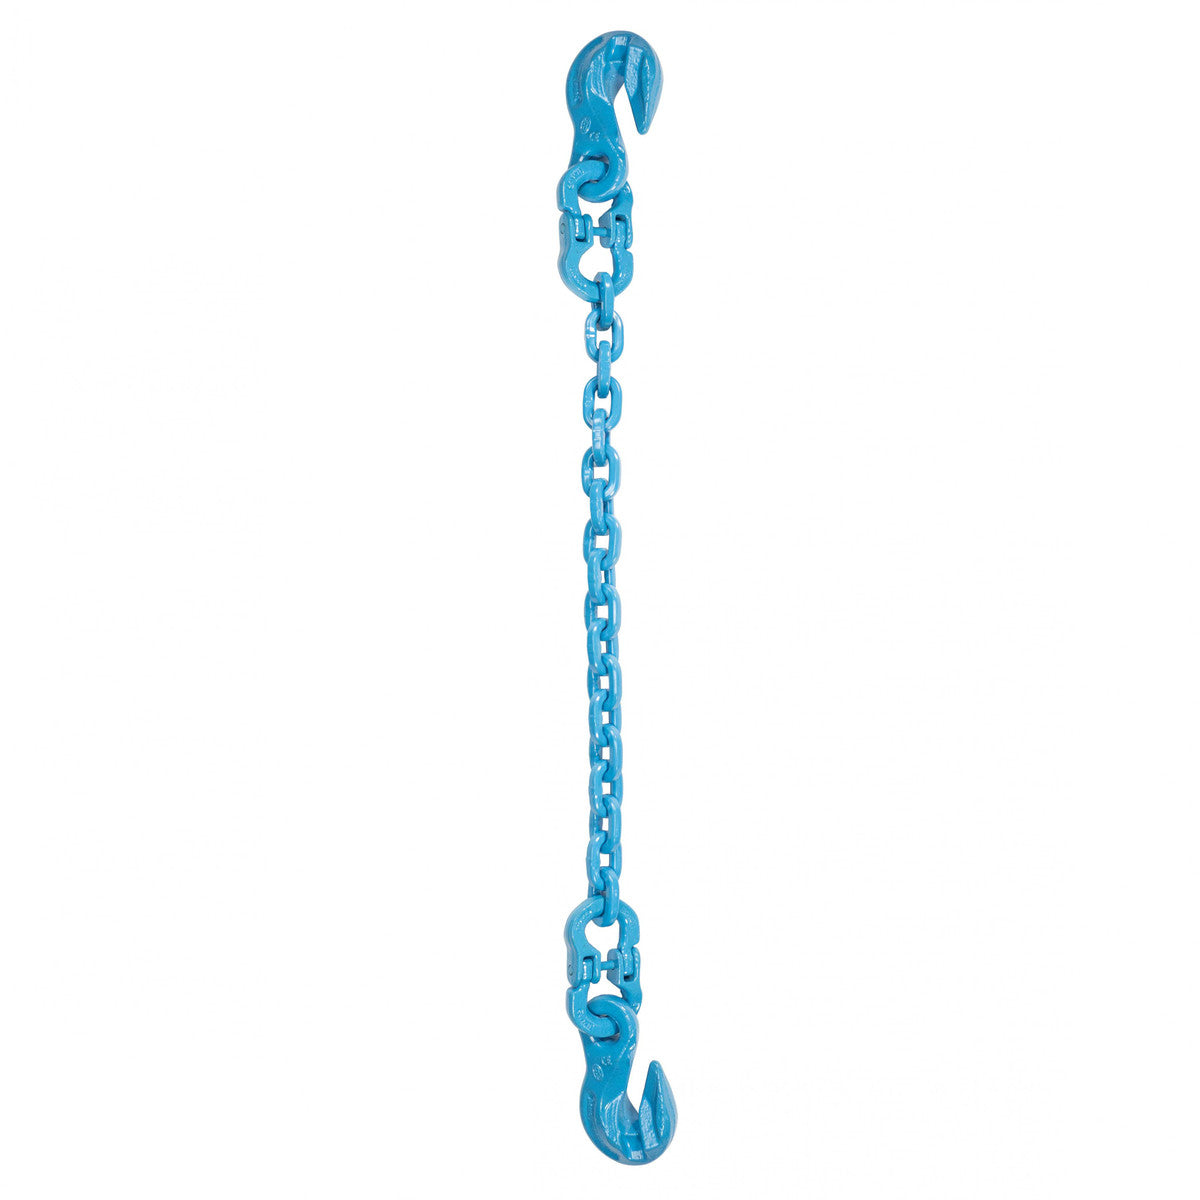 3/8" x 18' - Pewag Single Leg Chain Sling w/ Grab & Grab Hooks - Grade 120